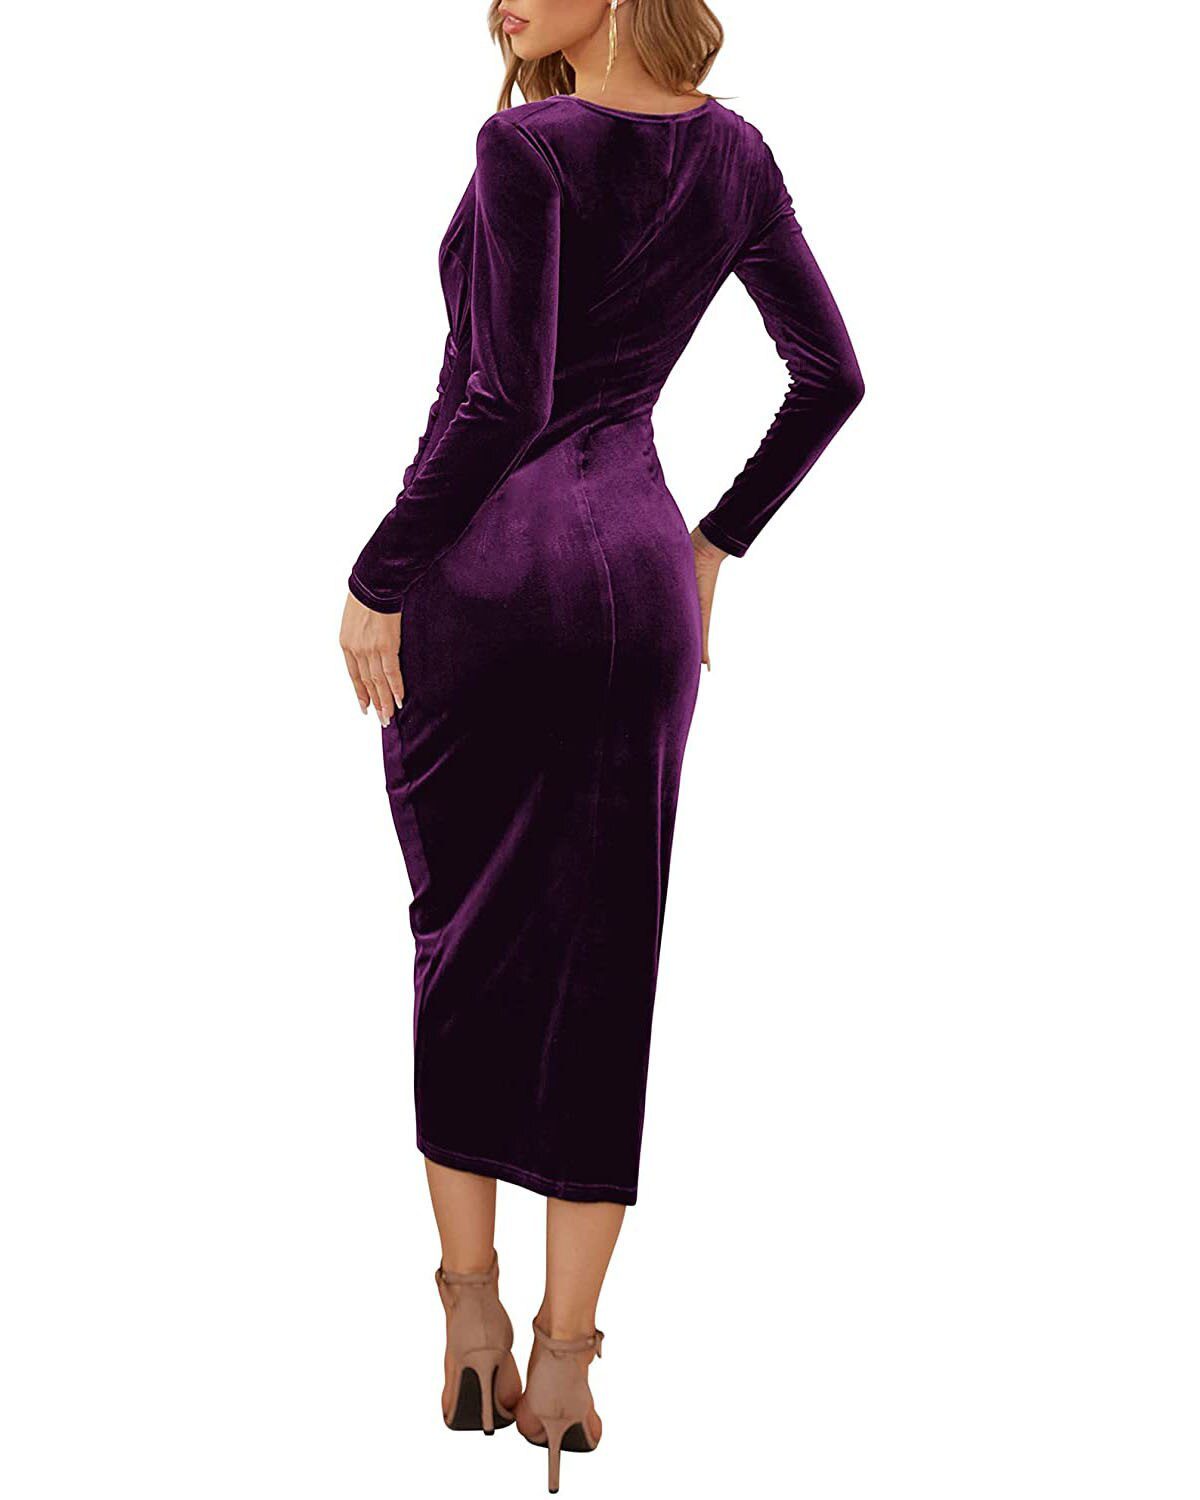 Elegant Long Sleeve Ruched Velvet Bodycon Midi Dress in Dresses